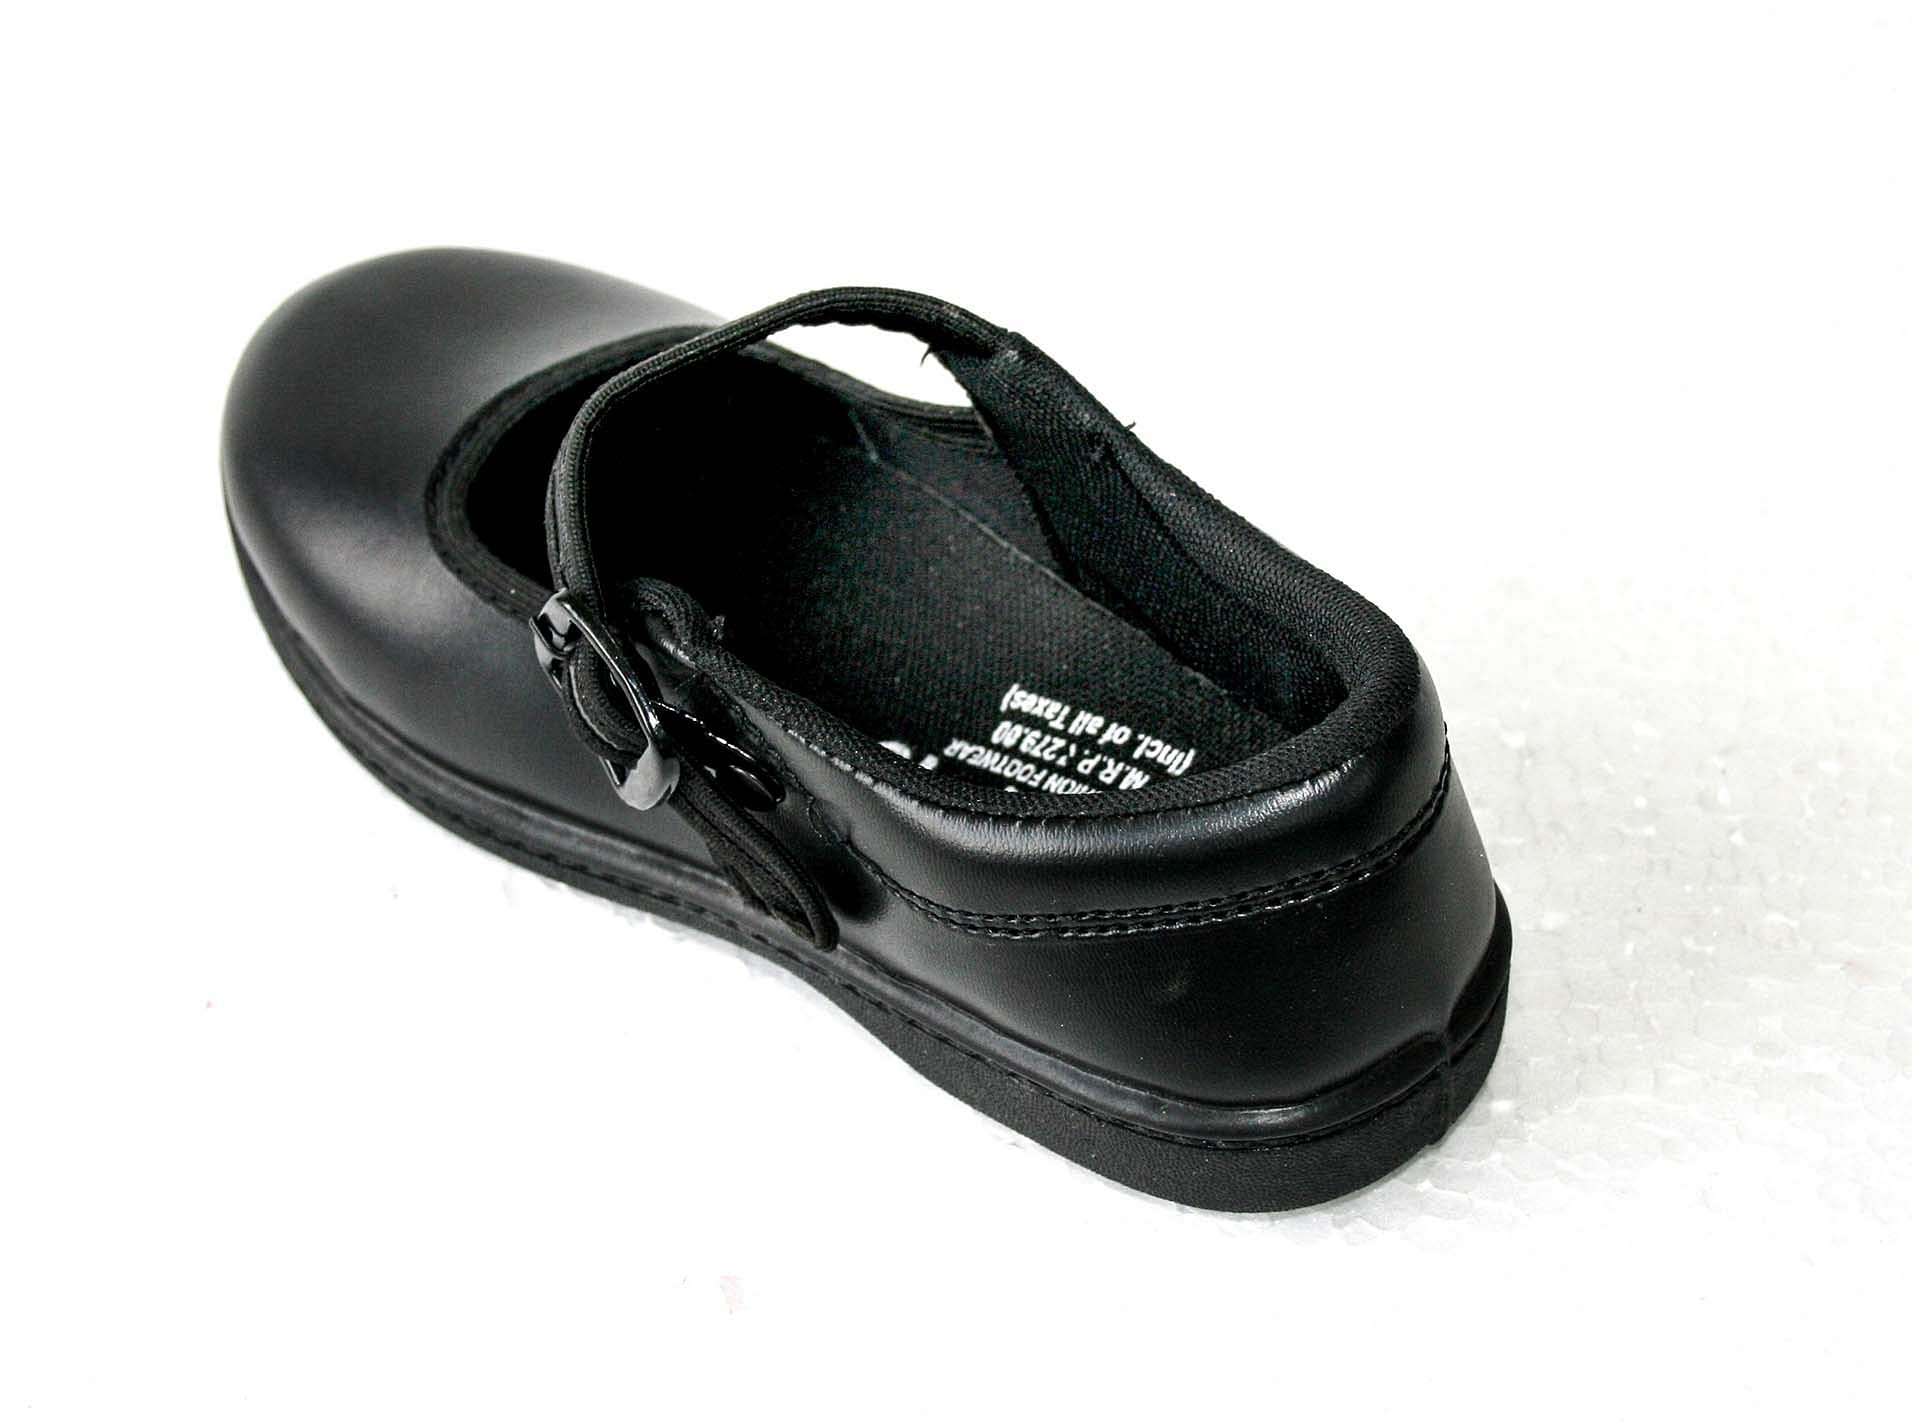 Pair-it Girls PVC School Shoe-Size- 11,12,13 - Color Black